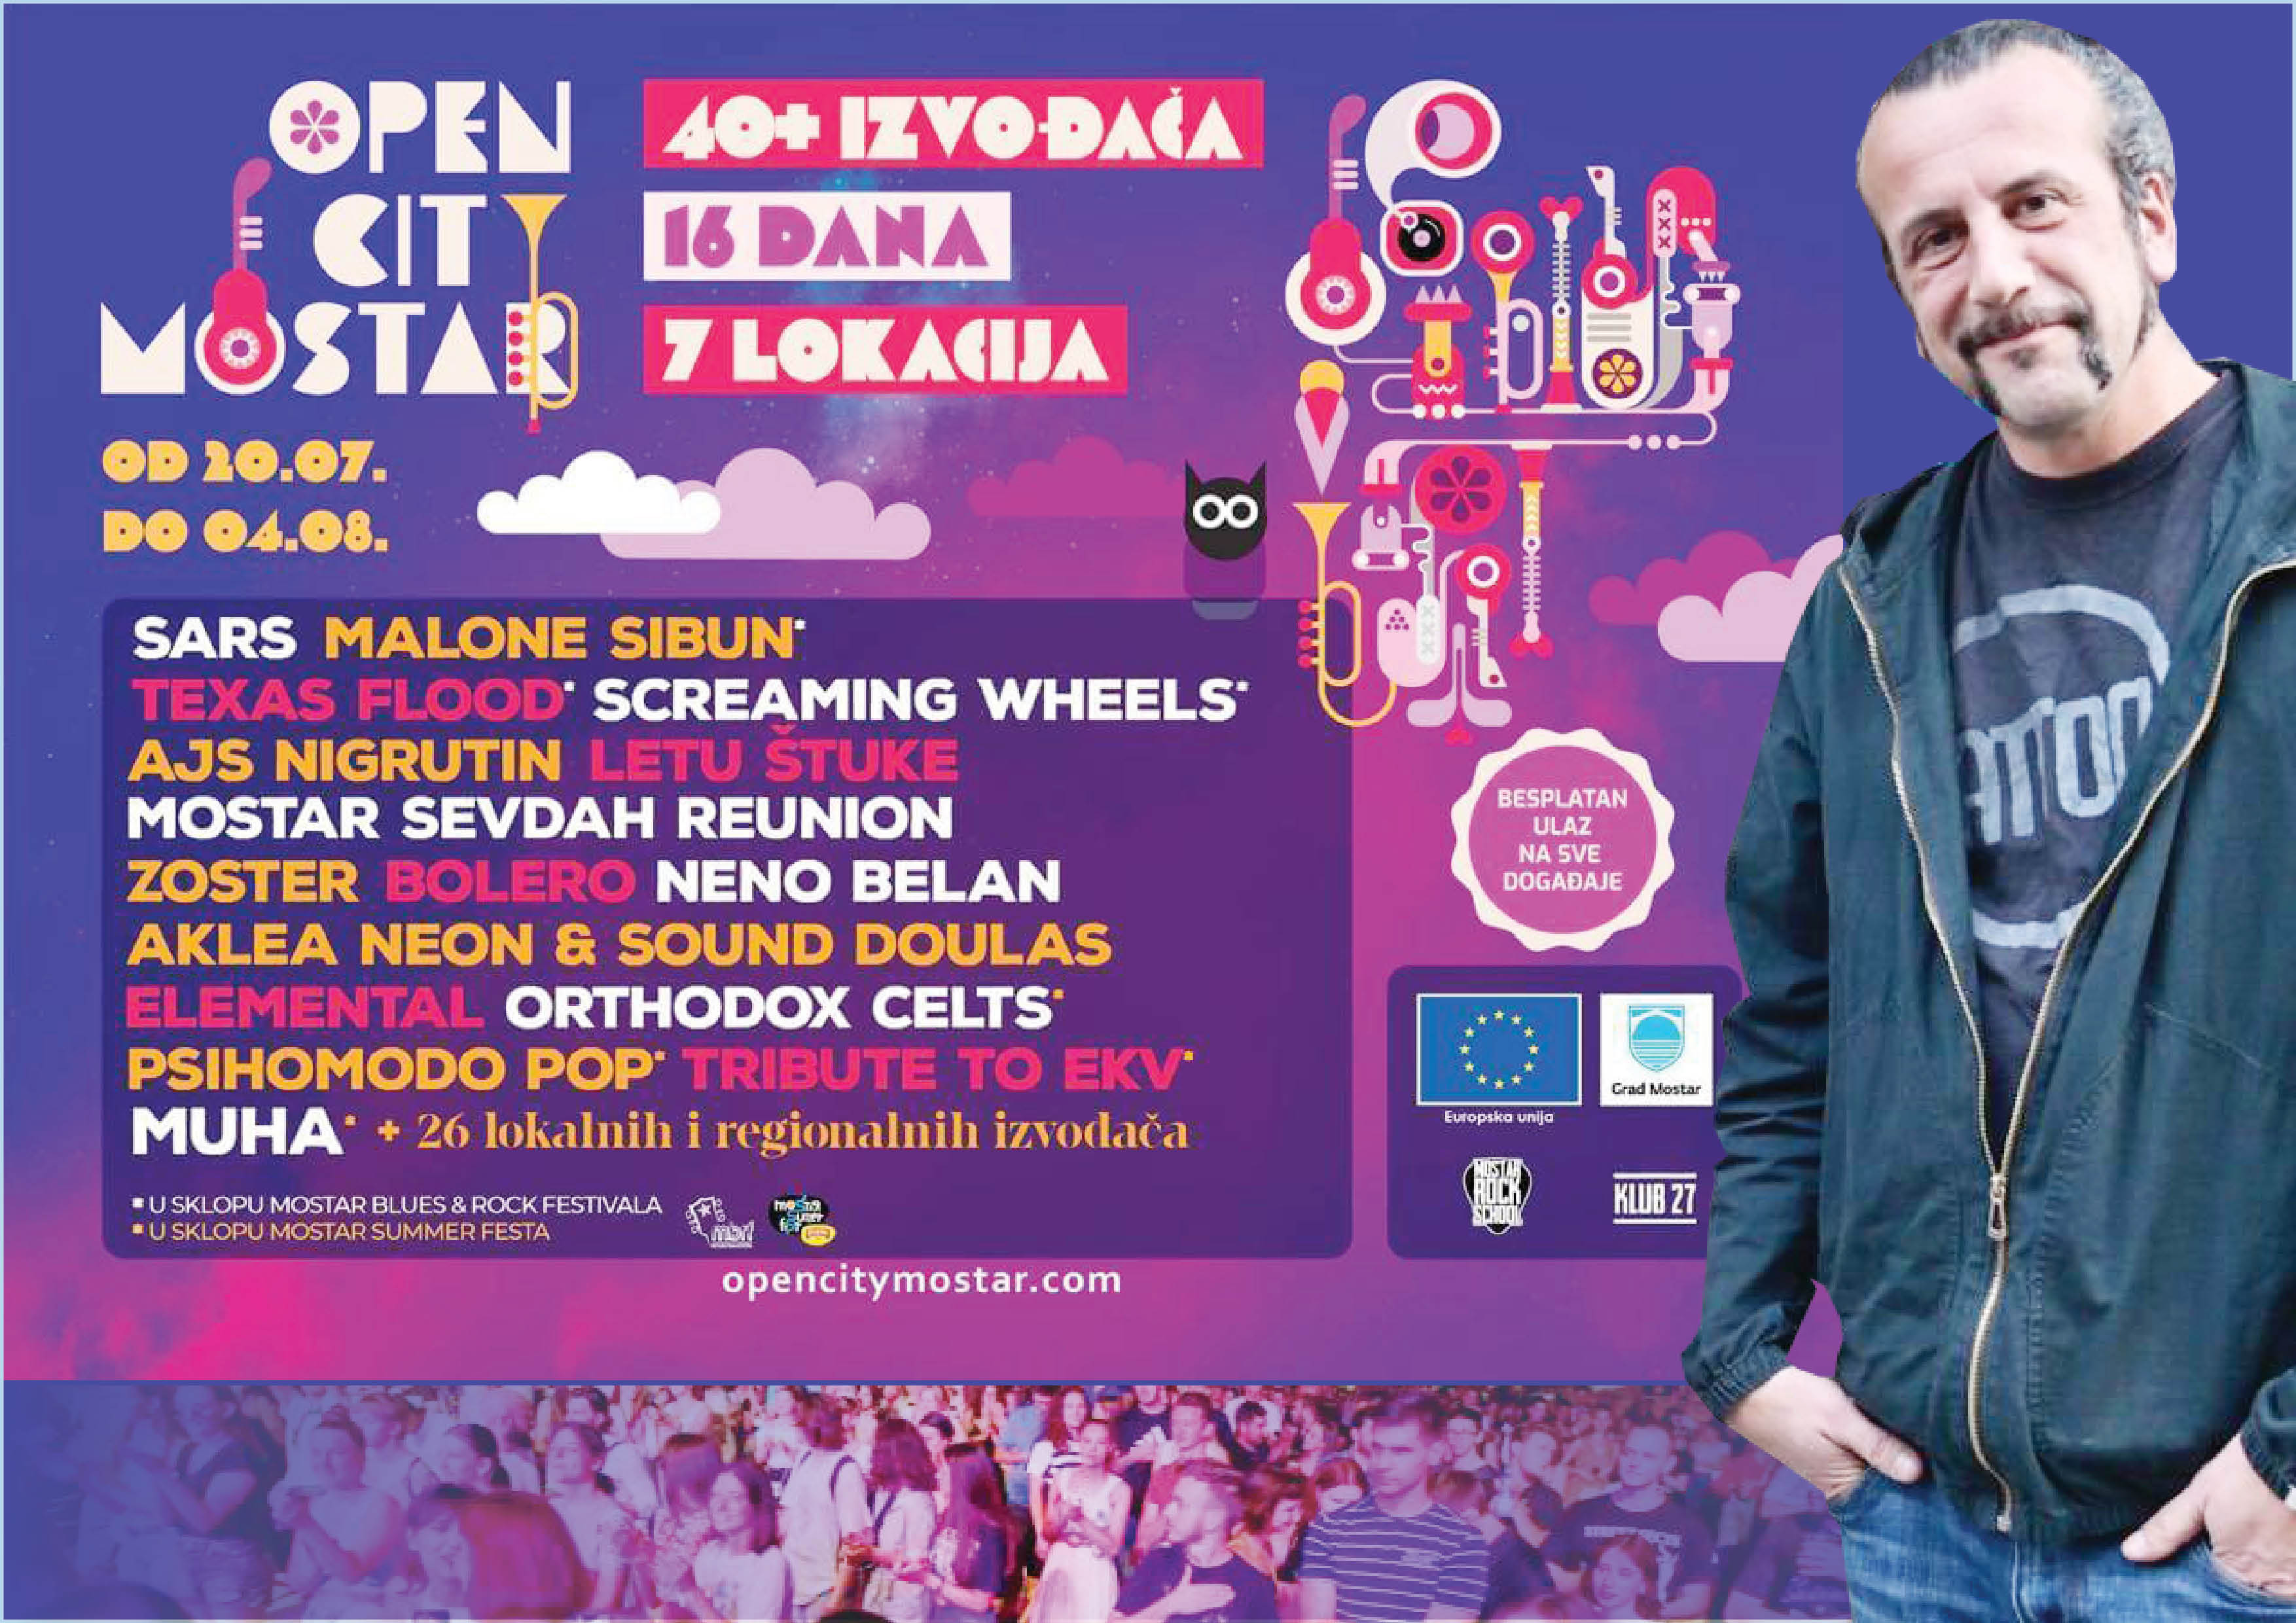 Festival koji Mostaru može donijeti puno pozitivnih stvari